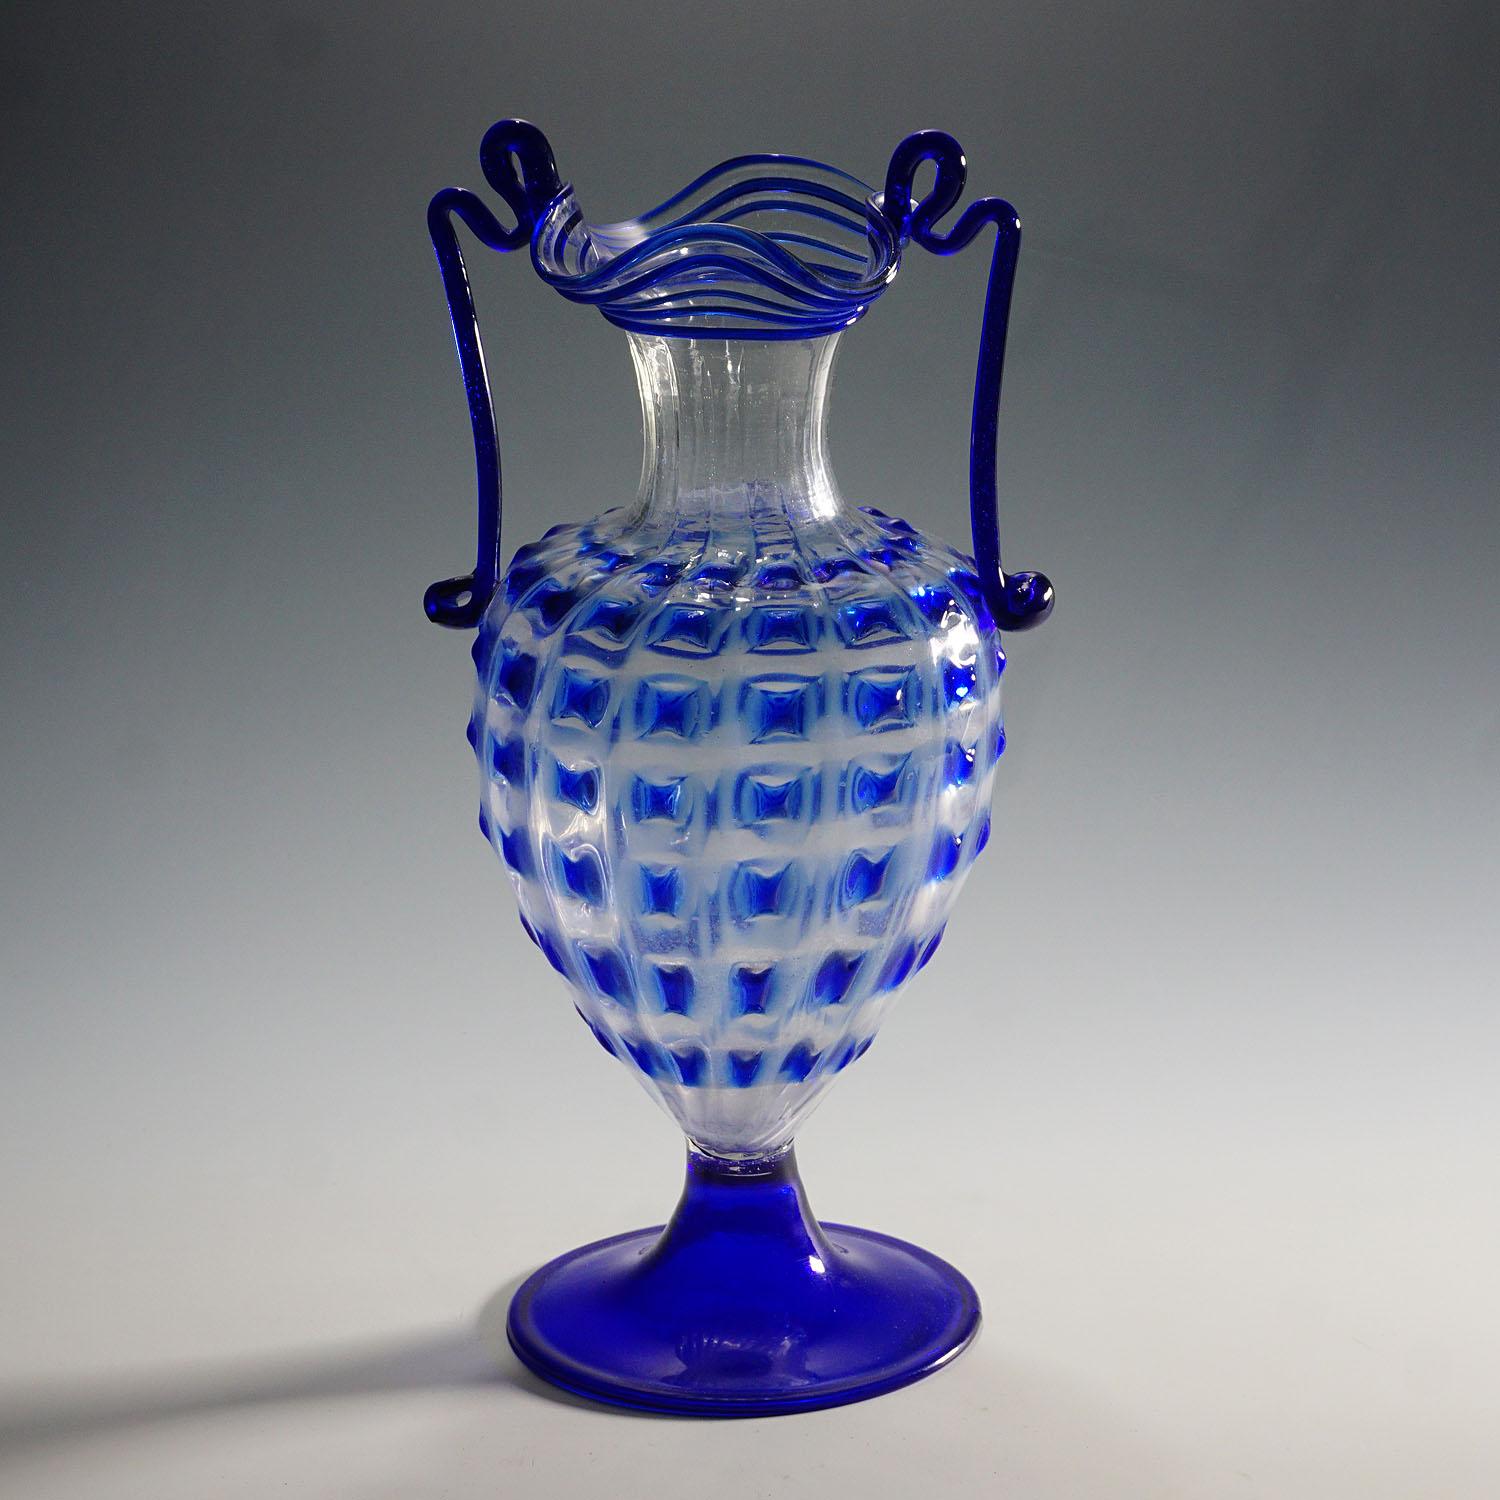 Große Fratelli Toso Amphora Vase ca. 1930.

Eine große Murano soffiato Kunstglasvase, hergestellt von Vetreria Fratelli Toso Anfang des 20. Die Vase ist aus klarem Glas mit Applikationen und Henkeln in Blau. Ein authentisches Beispiel für